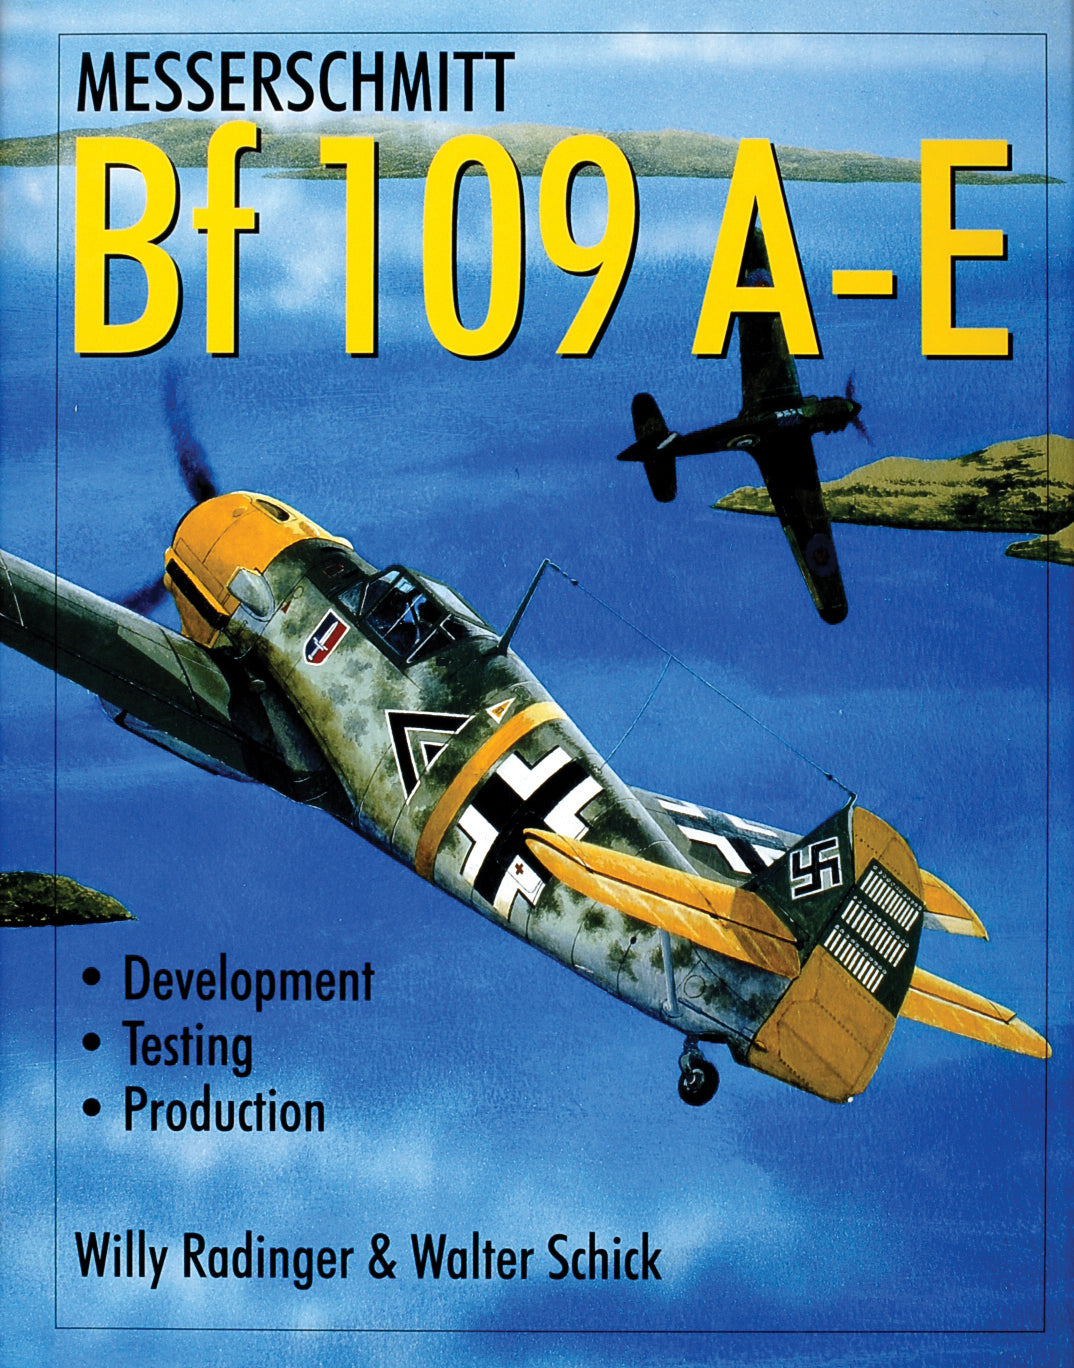 Messerschmitt Bf 109 A-E